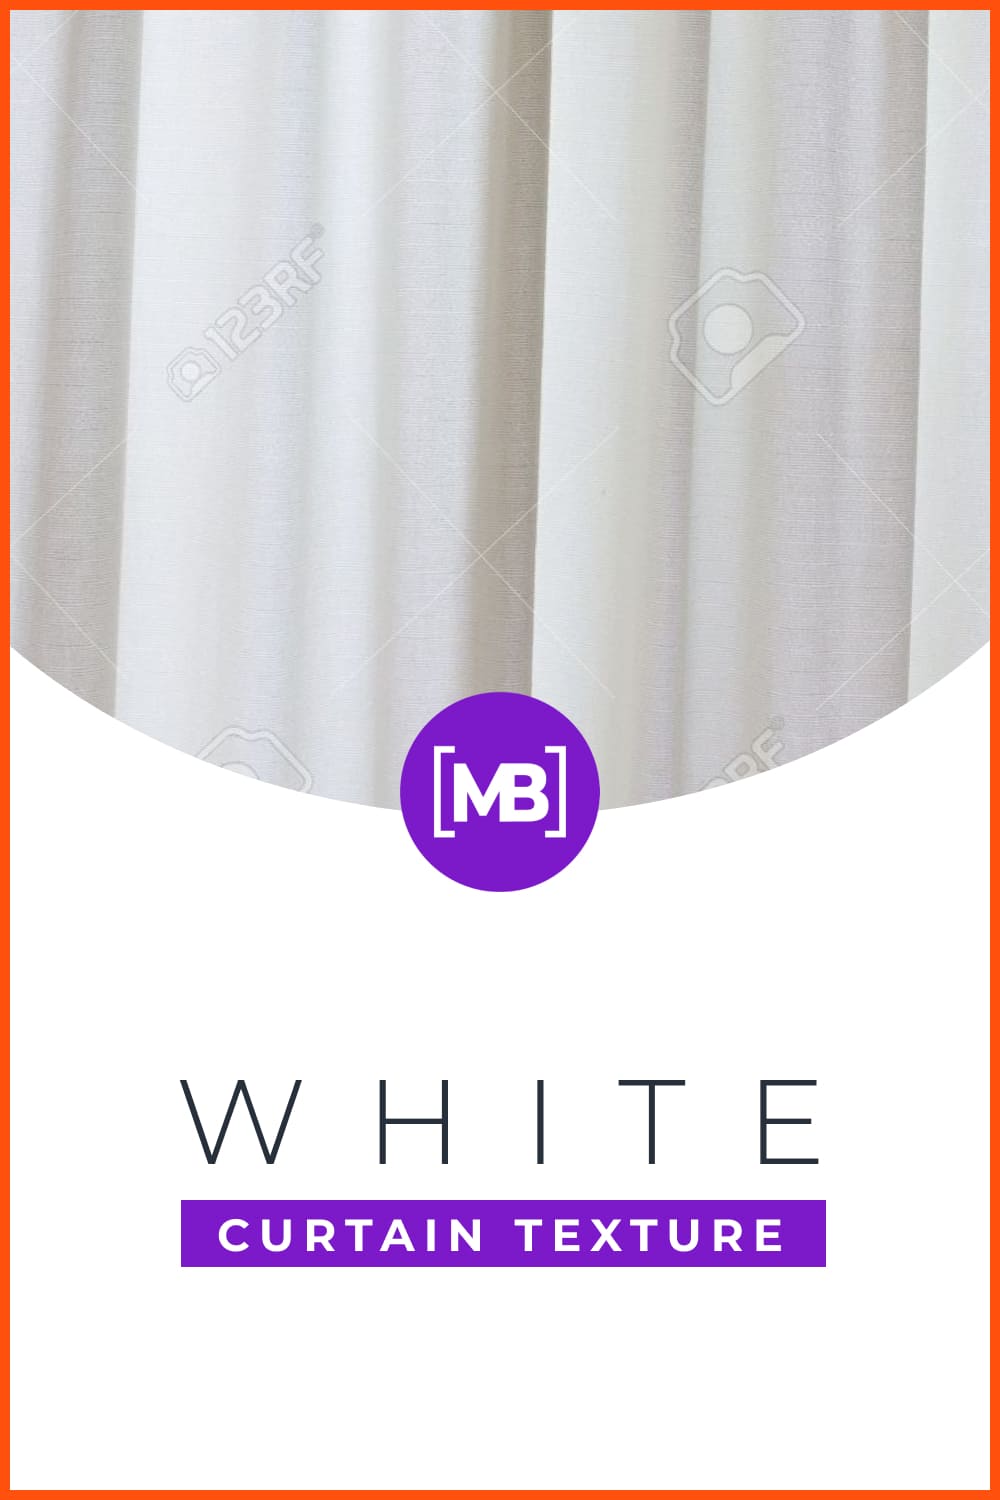  White curtain texture.